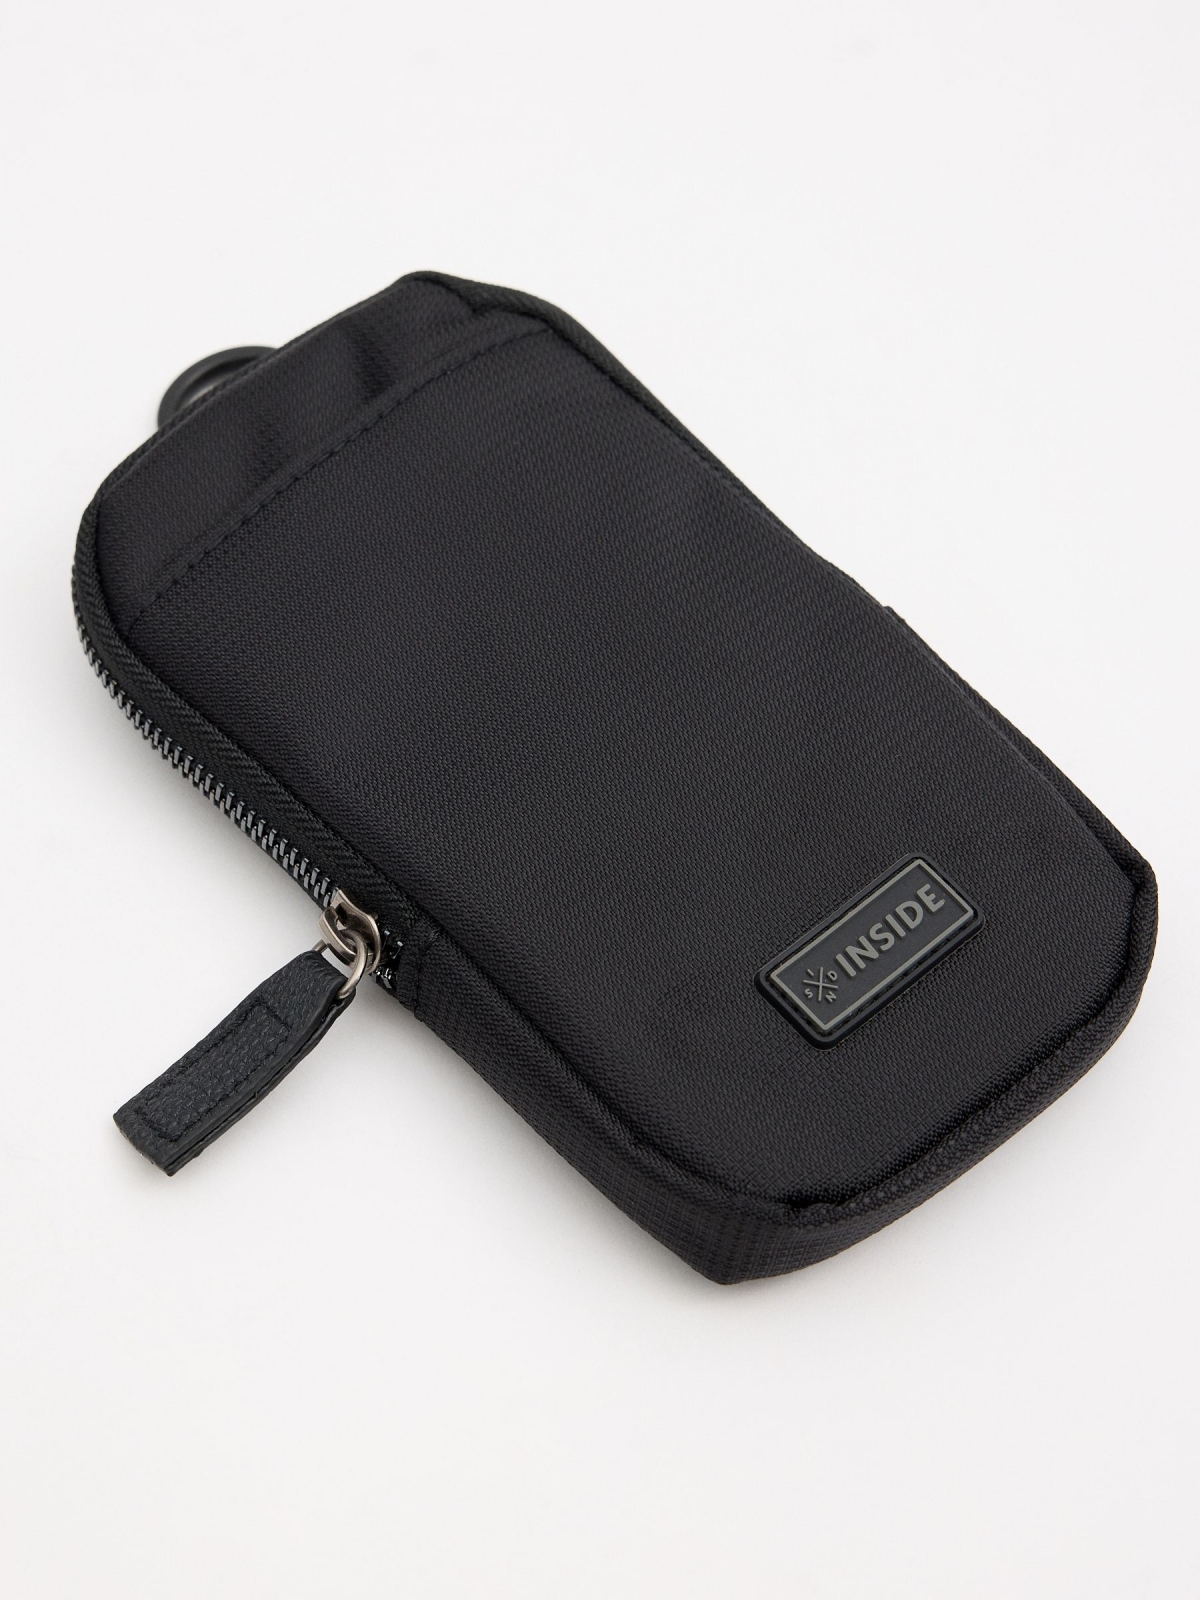 Black smartphone bag black back view